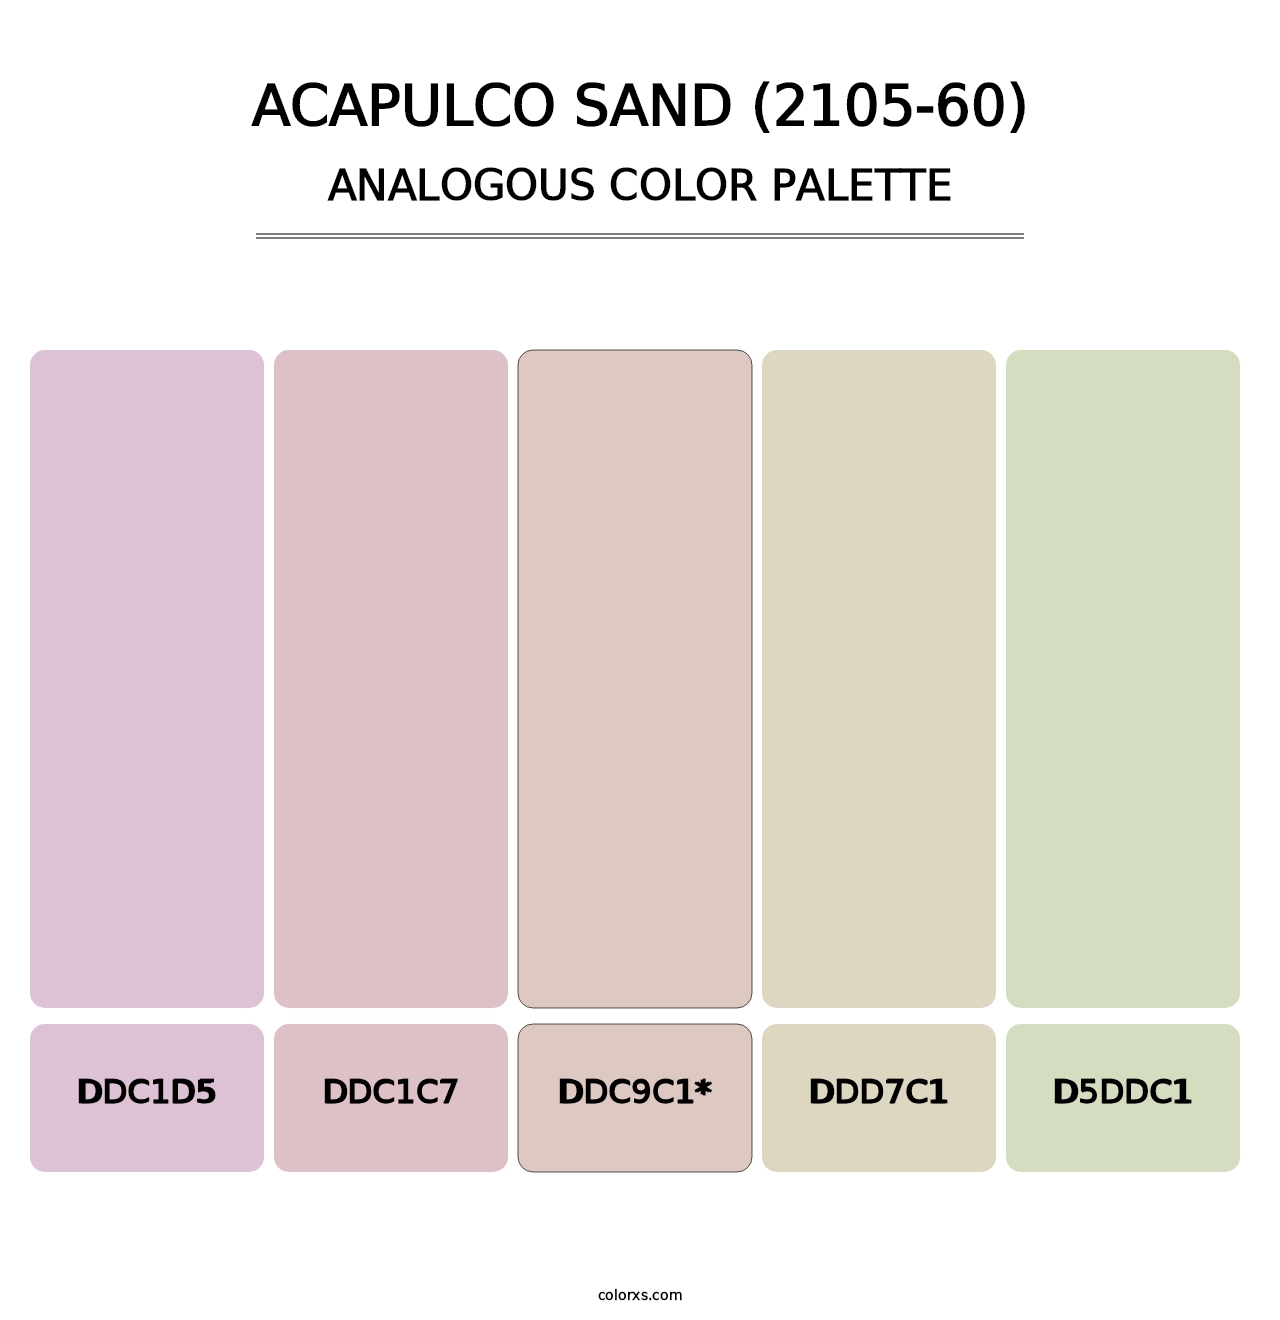 Acapulco Sand (2105-60) - Analogous Color Palette